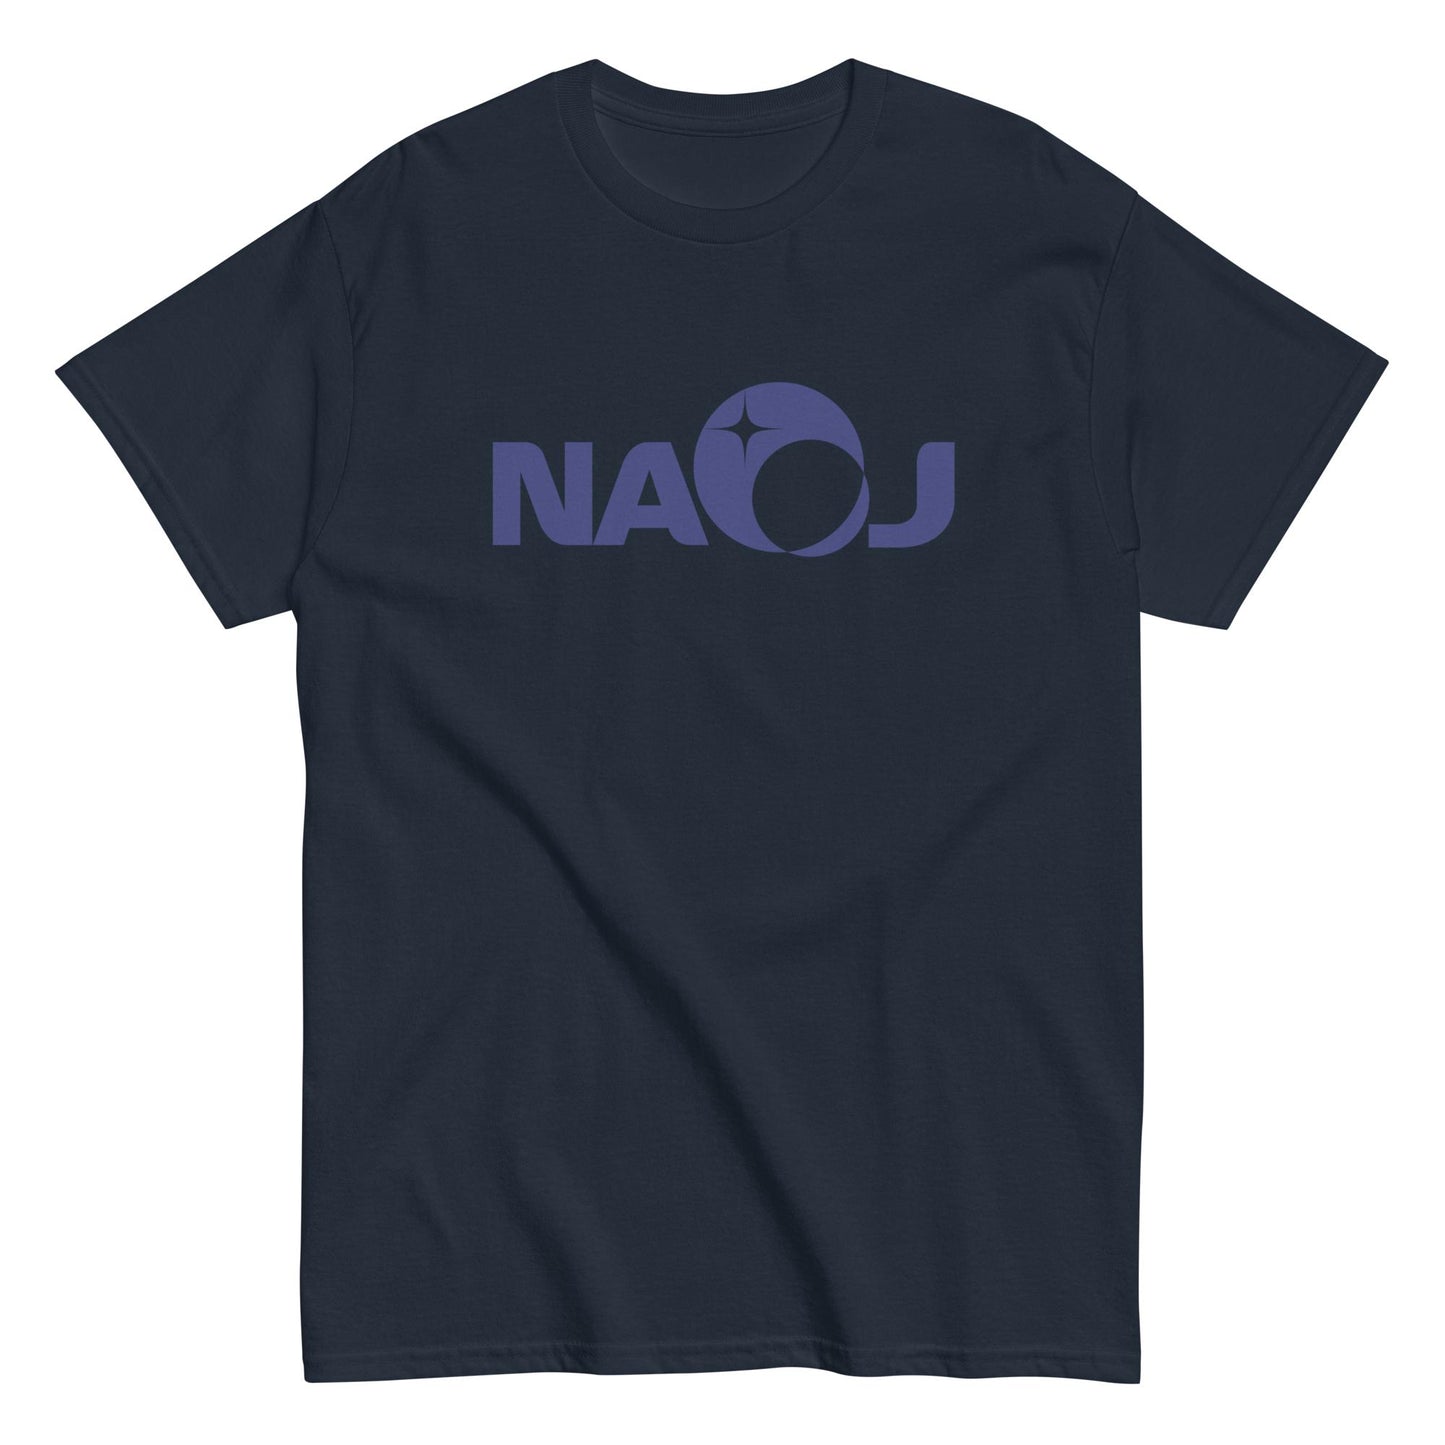 国立天文台 NAOJ ロゴマーク ヘビーウェイト Tシャツ ネイビー x ネイビー XL 00